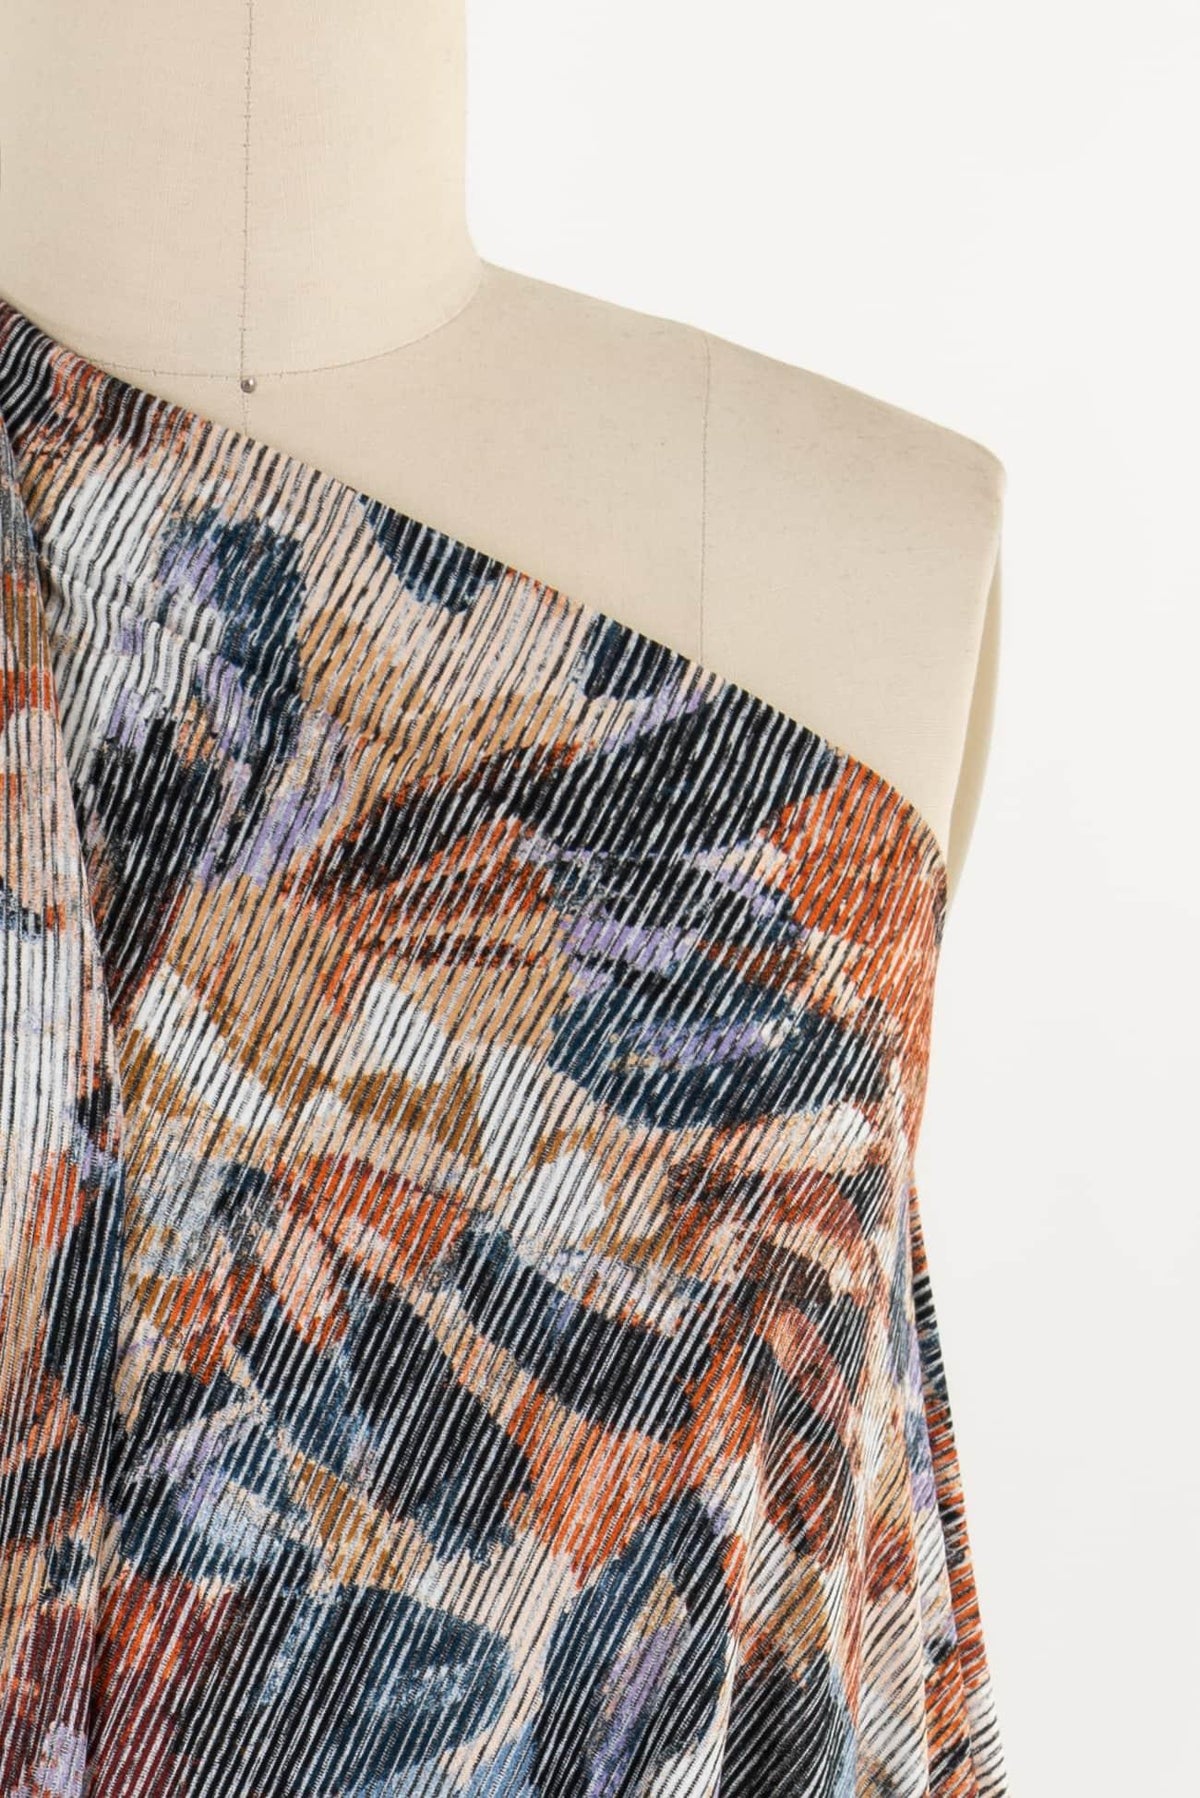 Treasures Viscose/Poly Knit - Marcy Tilton Fabrics